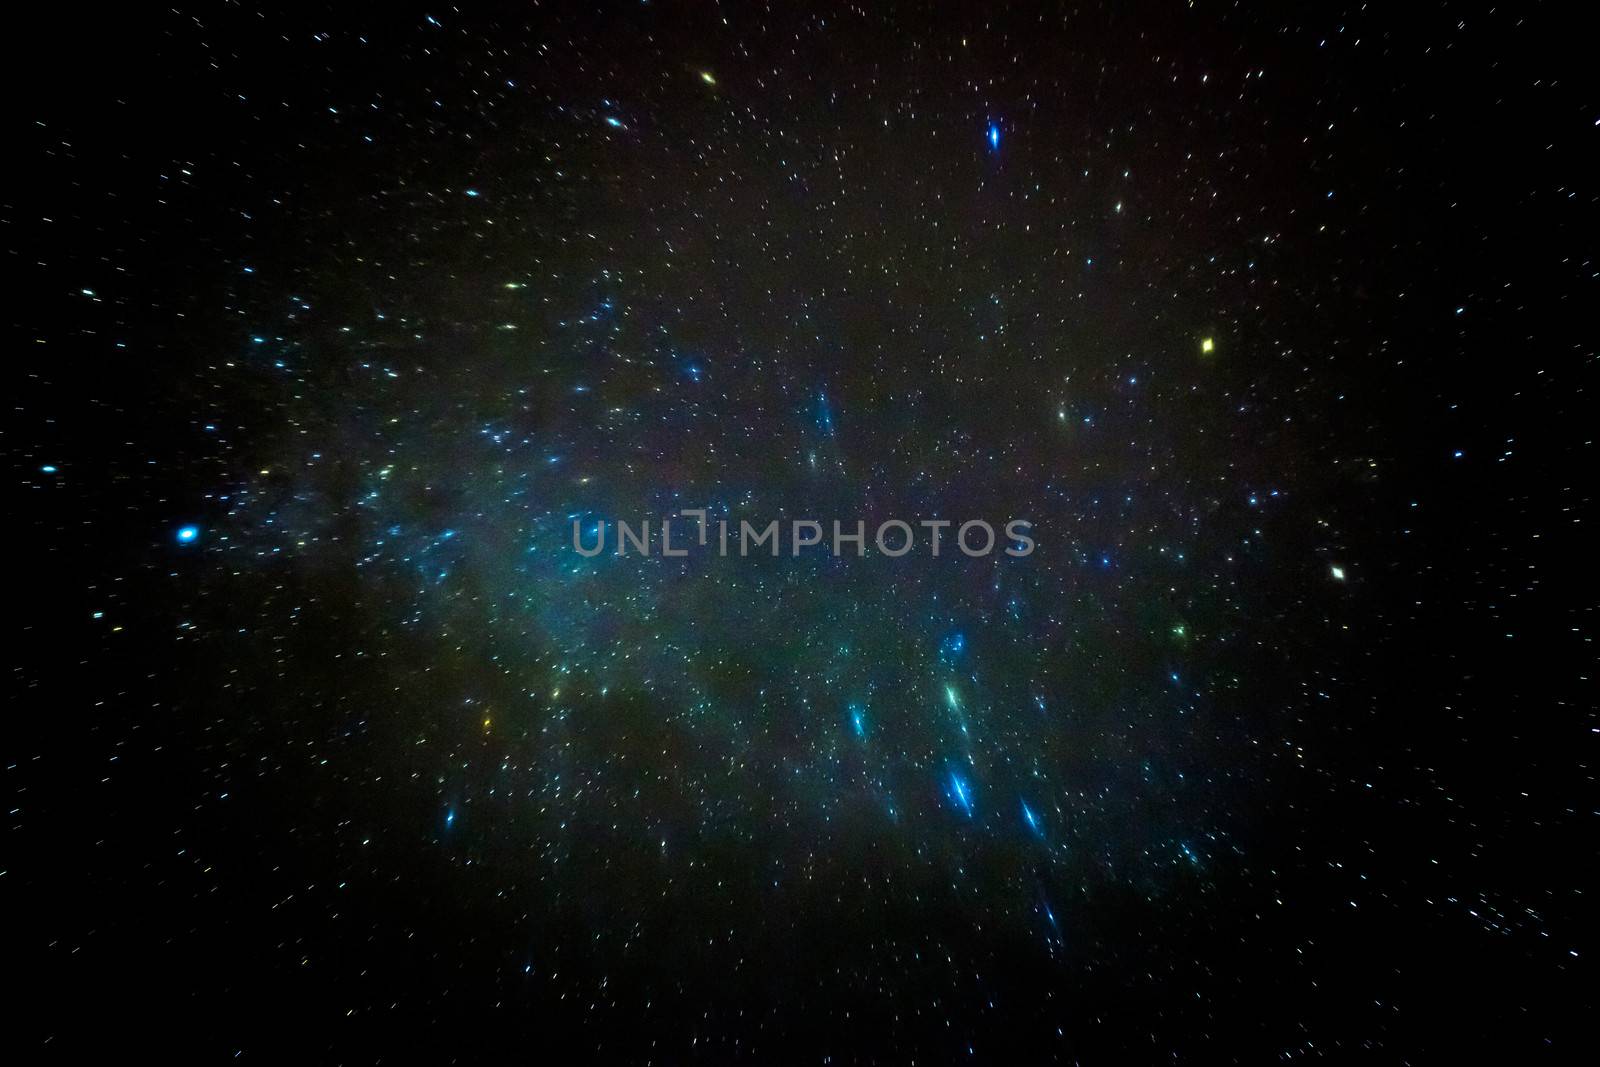 A birthplace of stars... a star cluster nebula.